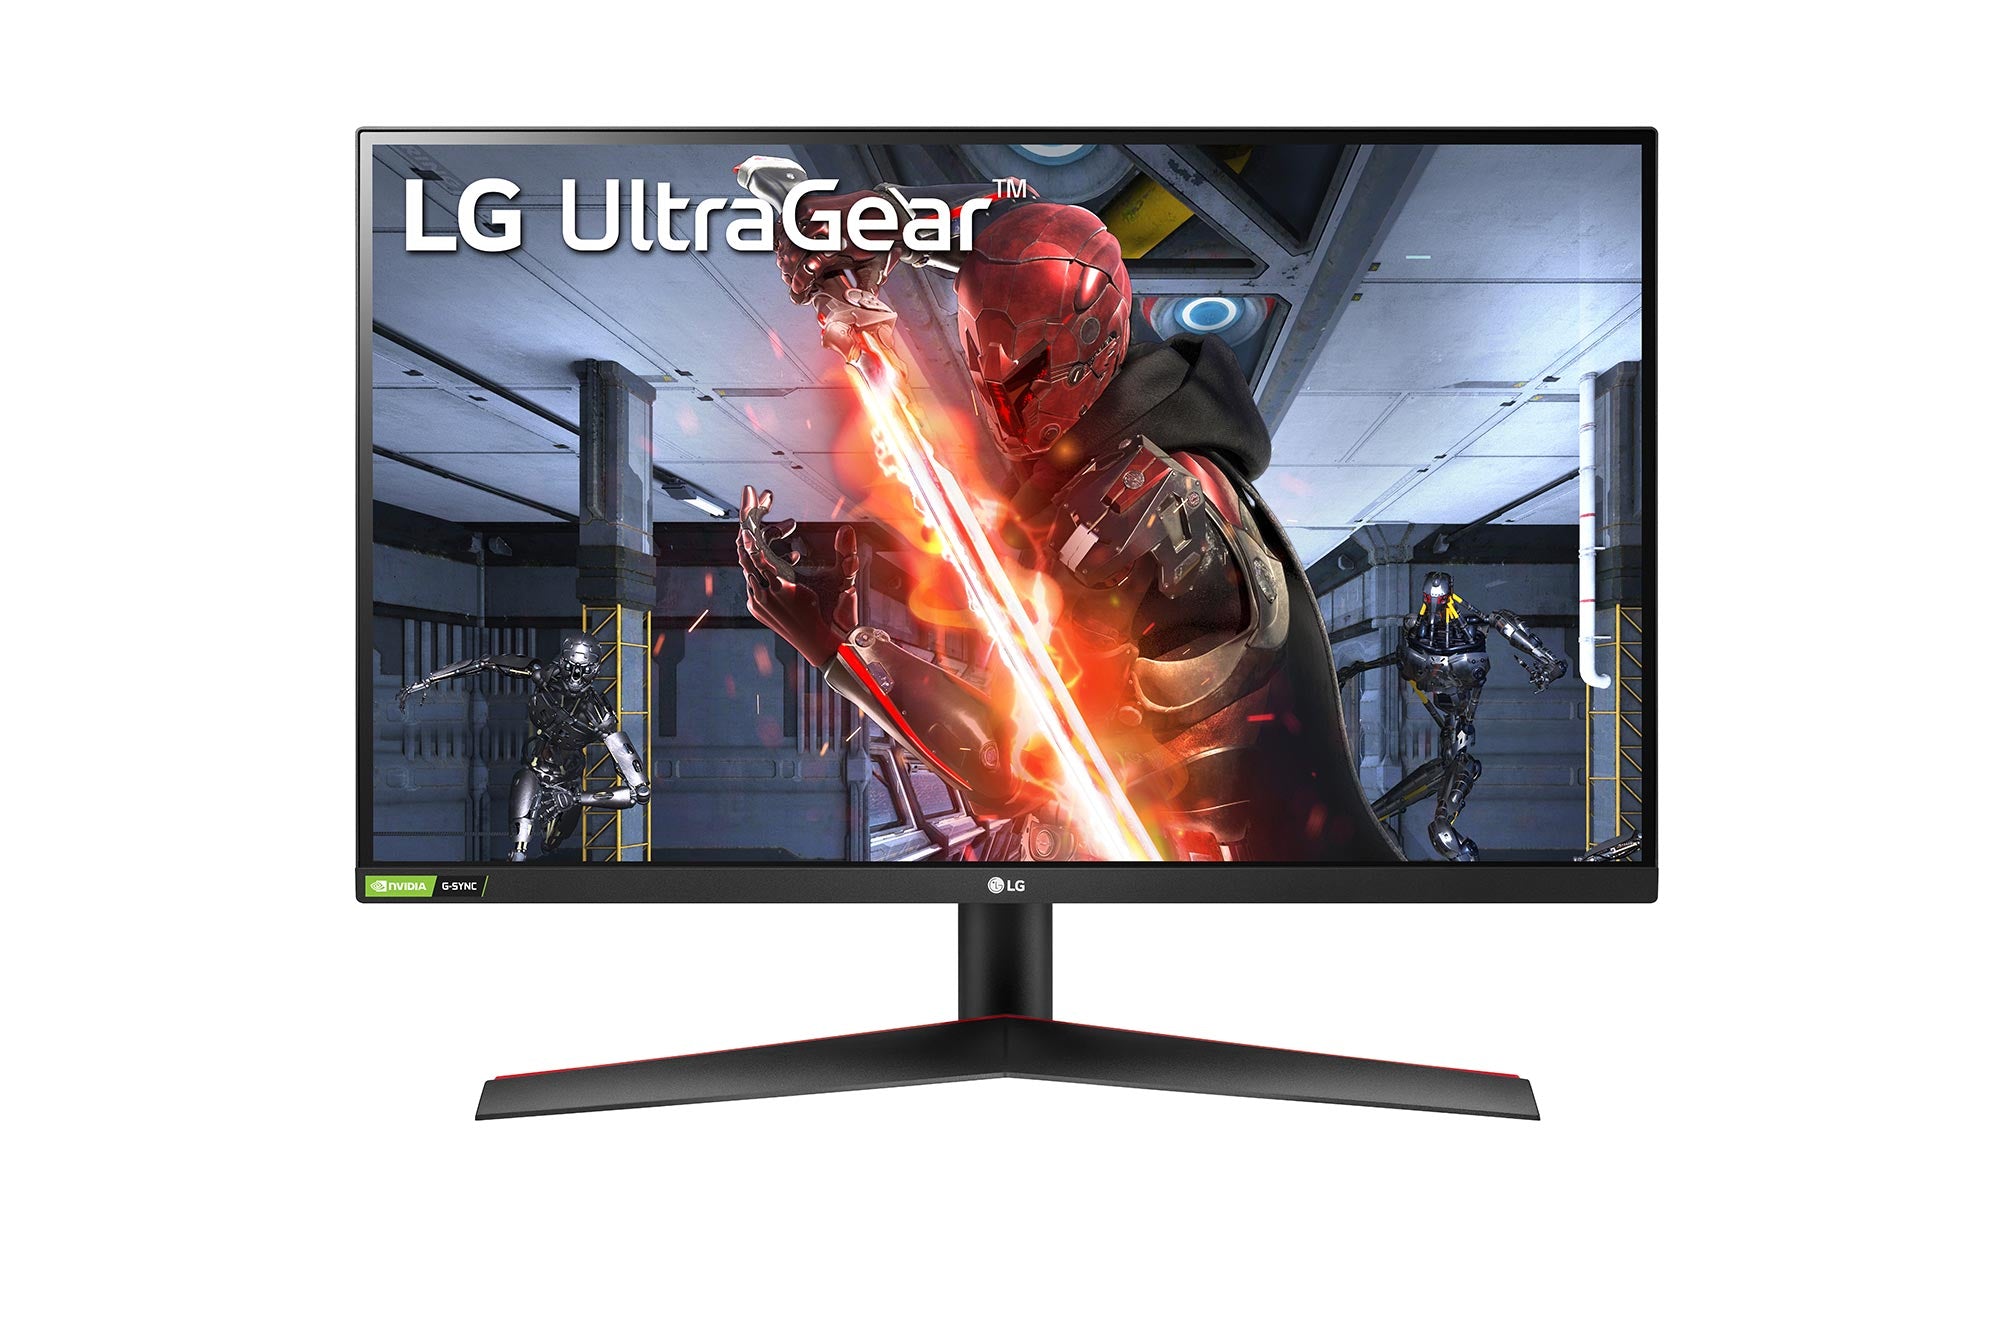 LG 27GN600-B UltraGear Monitor / 27 inch / 1920 x 1080 Resolution / AMD FreeSync Premium / Dynamic Action Sync / Black Stabilizer